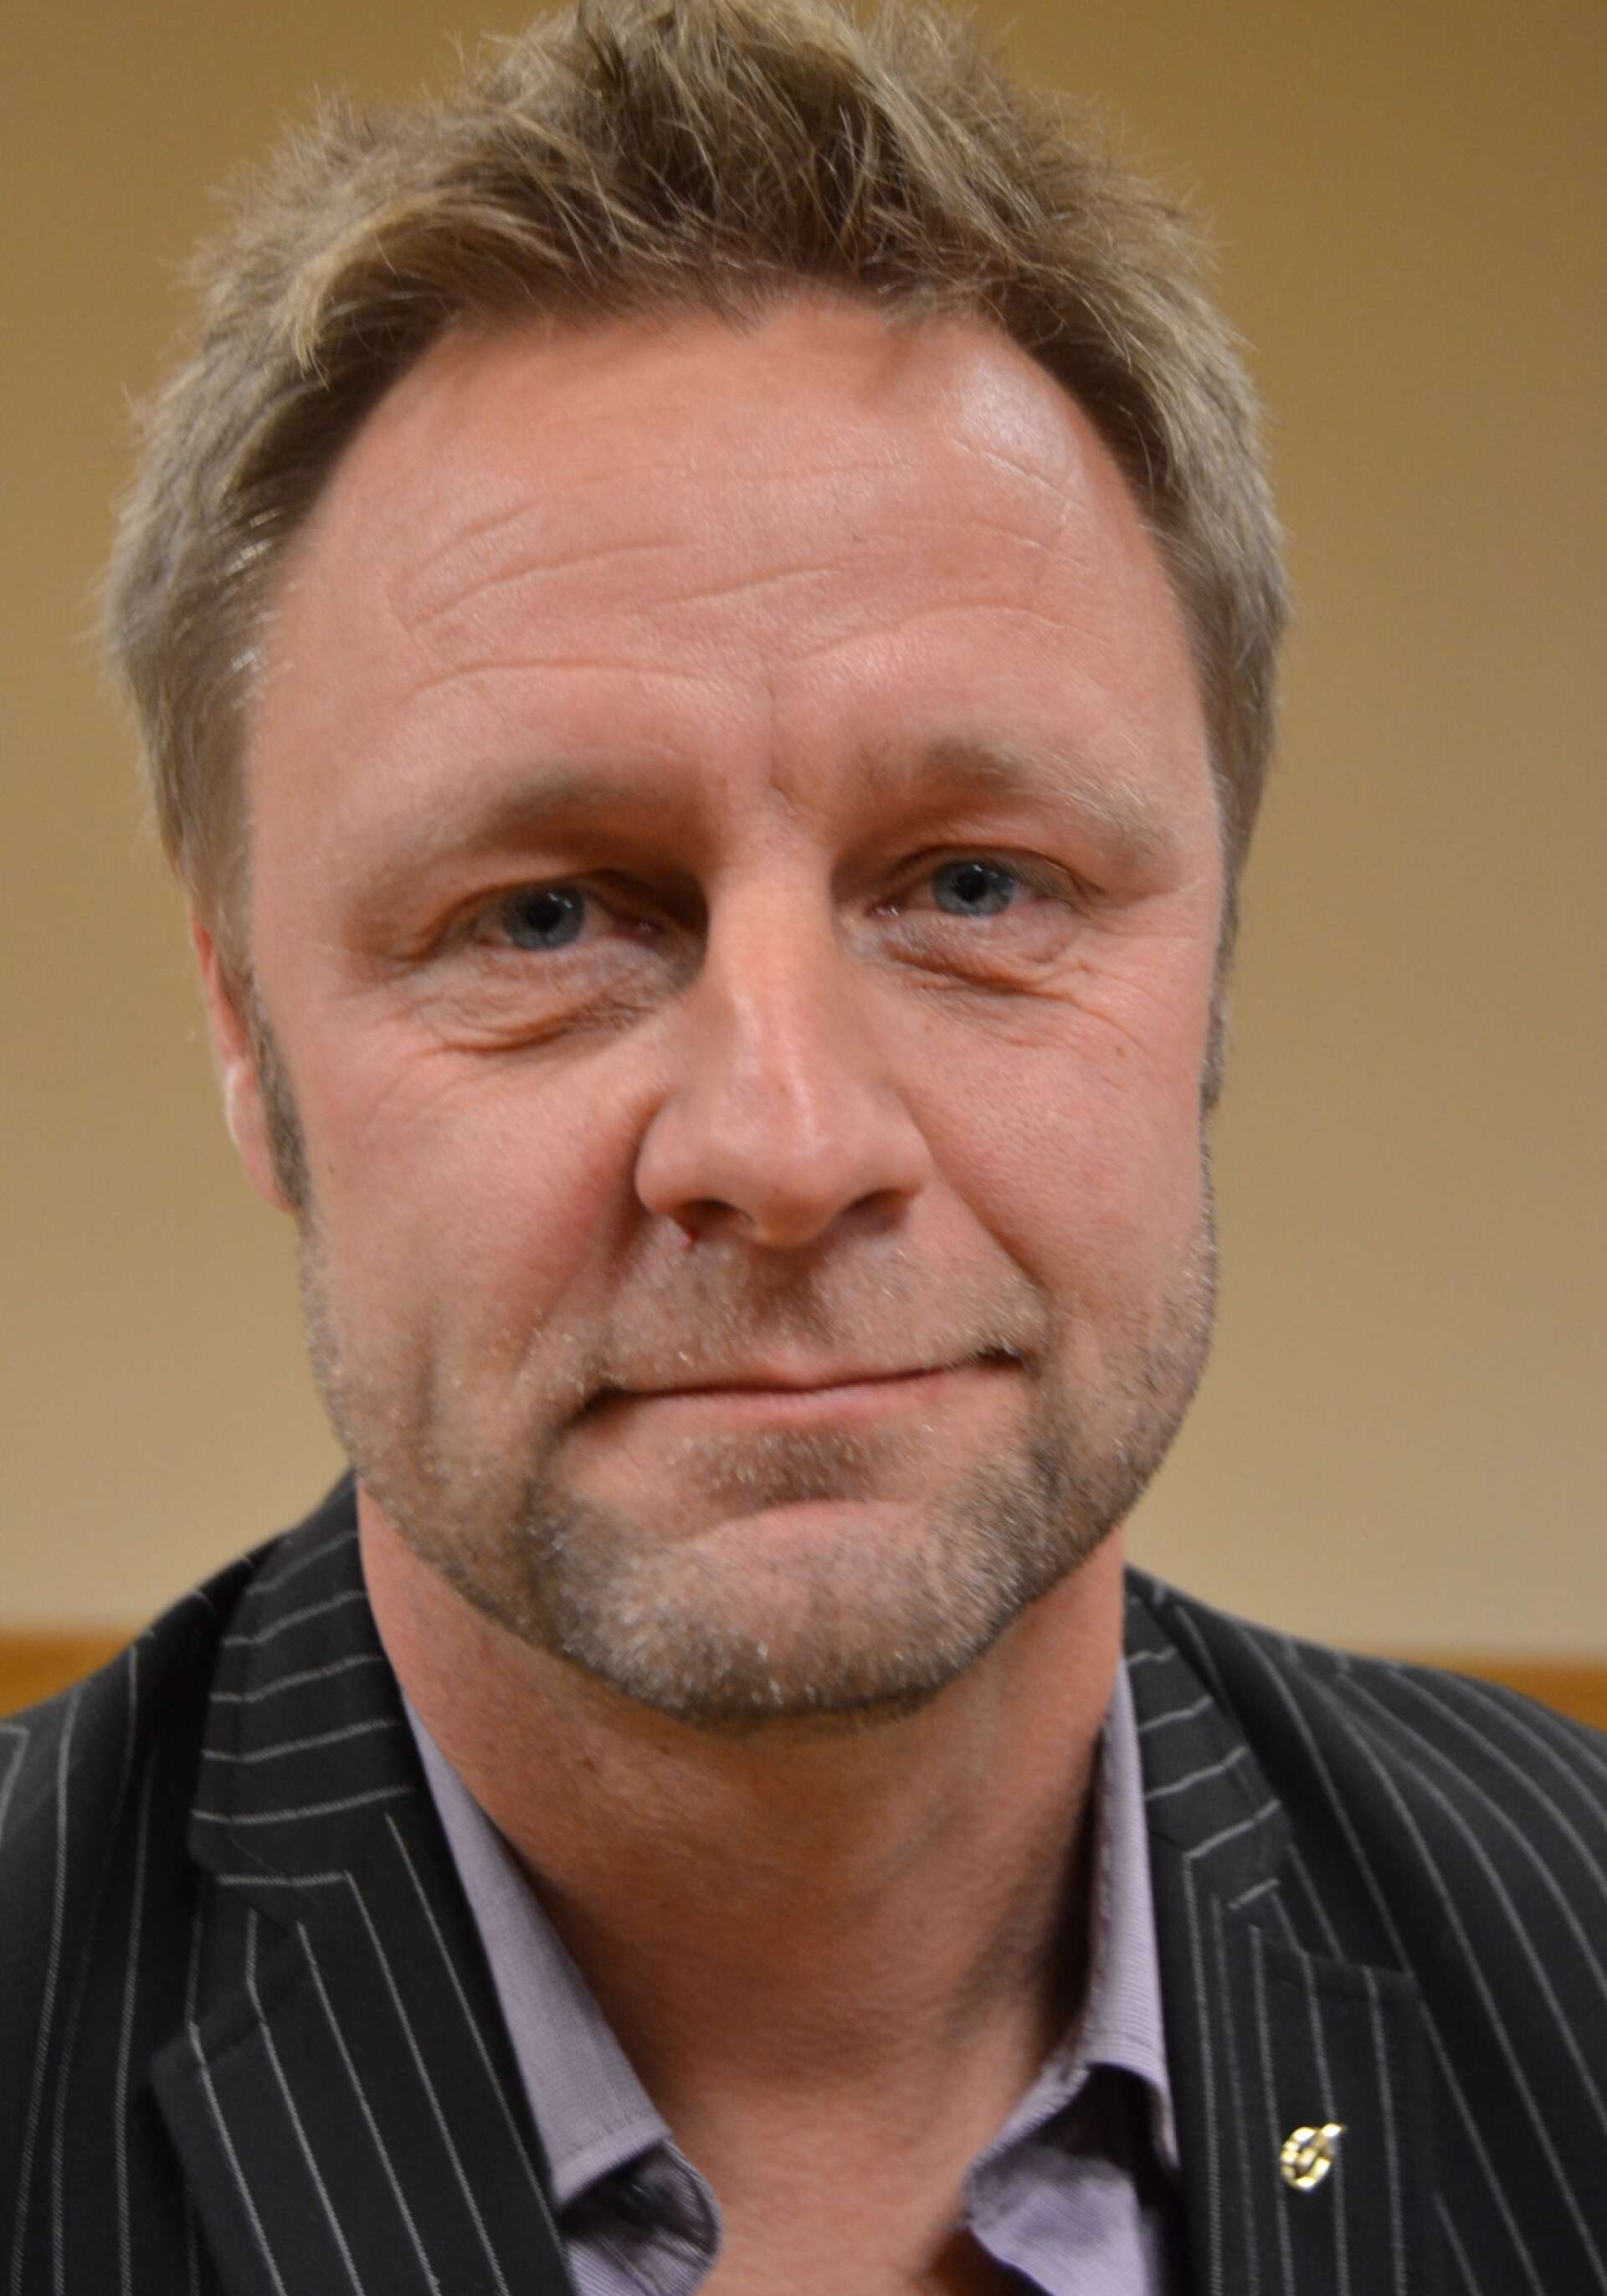 Pär Blomquist har i dag avancerat till områdeschef för folkbildning och kultur inom hela Region Värmland. Han hävdar att han blev lika chockad som alla andra när bedrägerierna i Kyrkerud uppdagades.